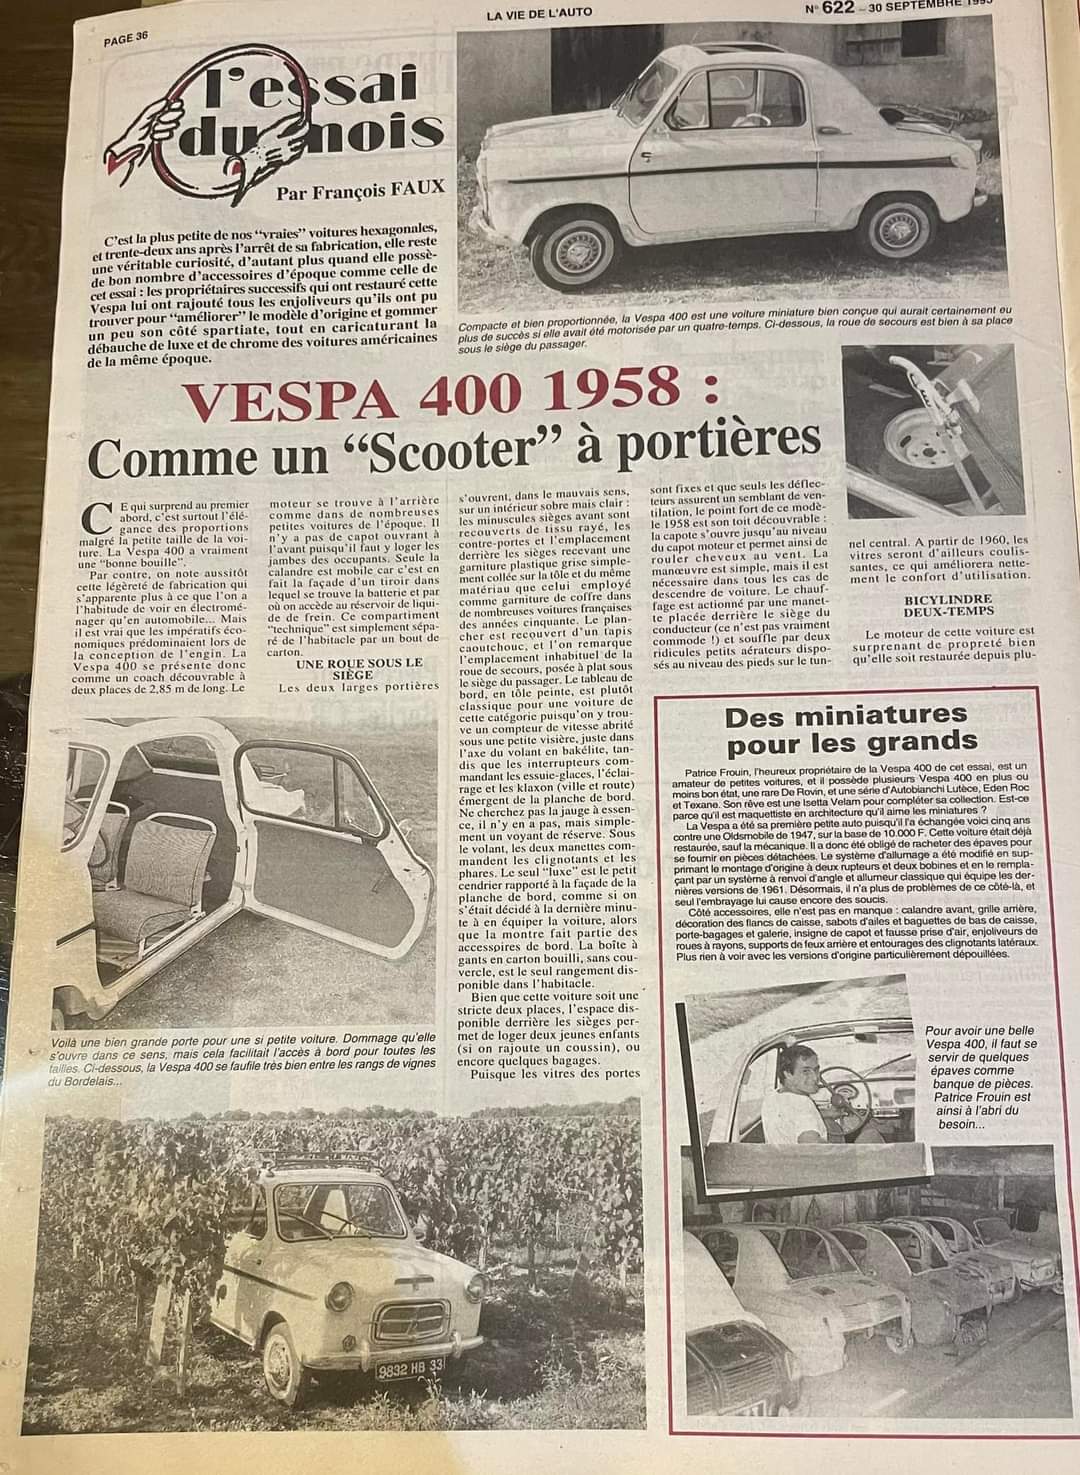 Article La vie de l'Auto sur Vespa400